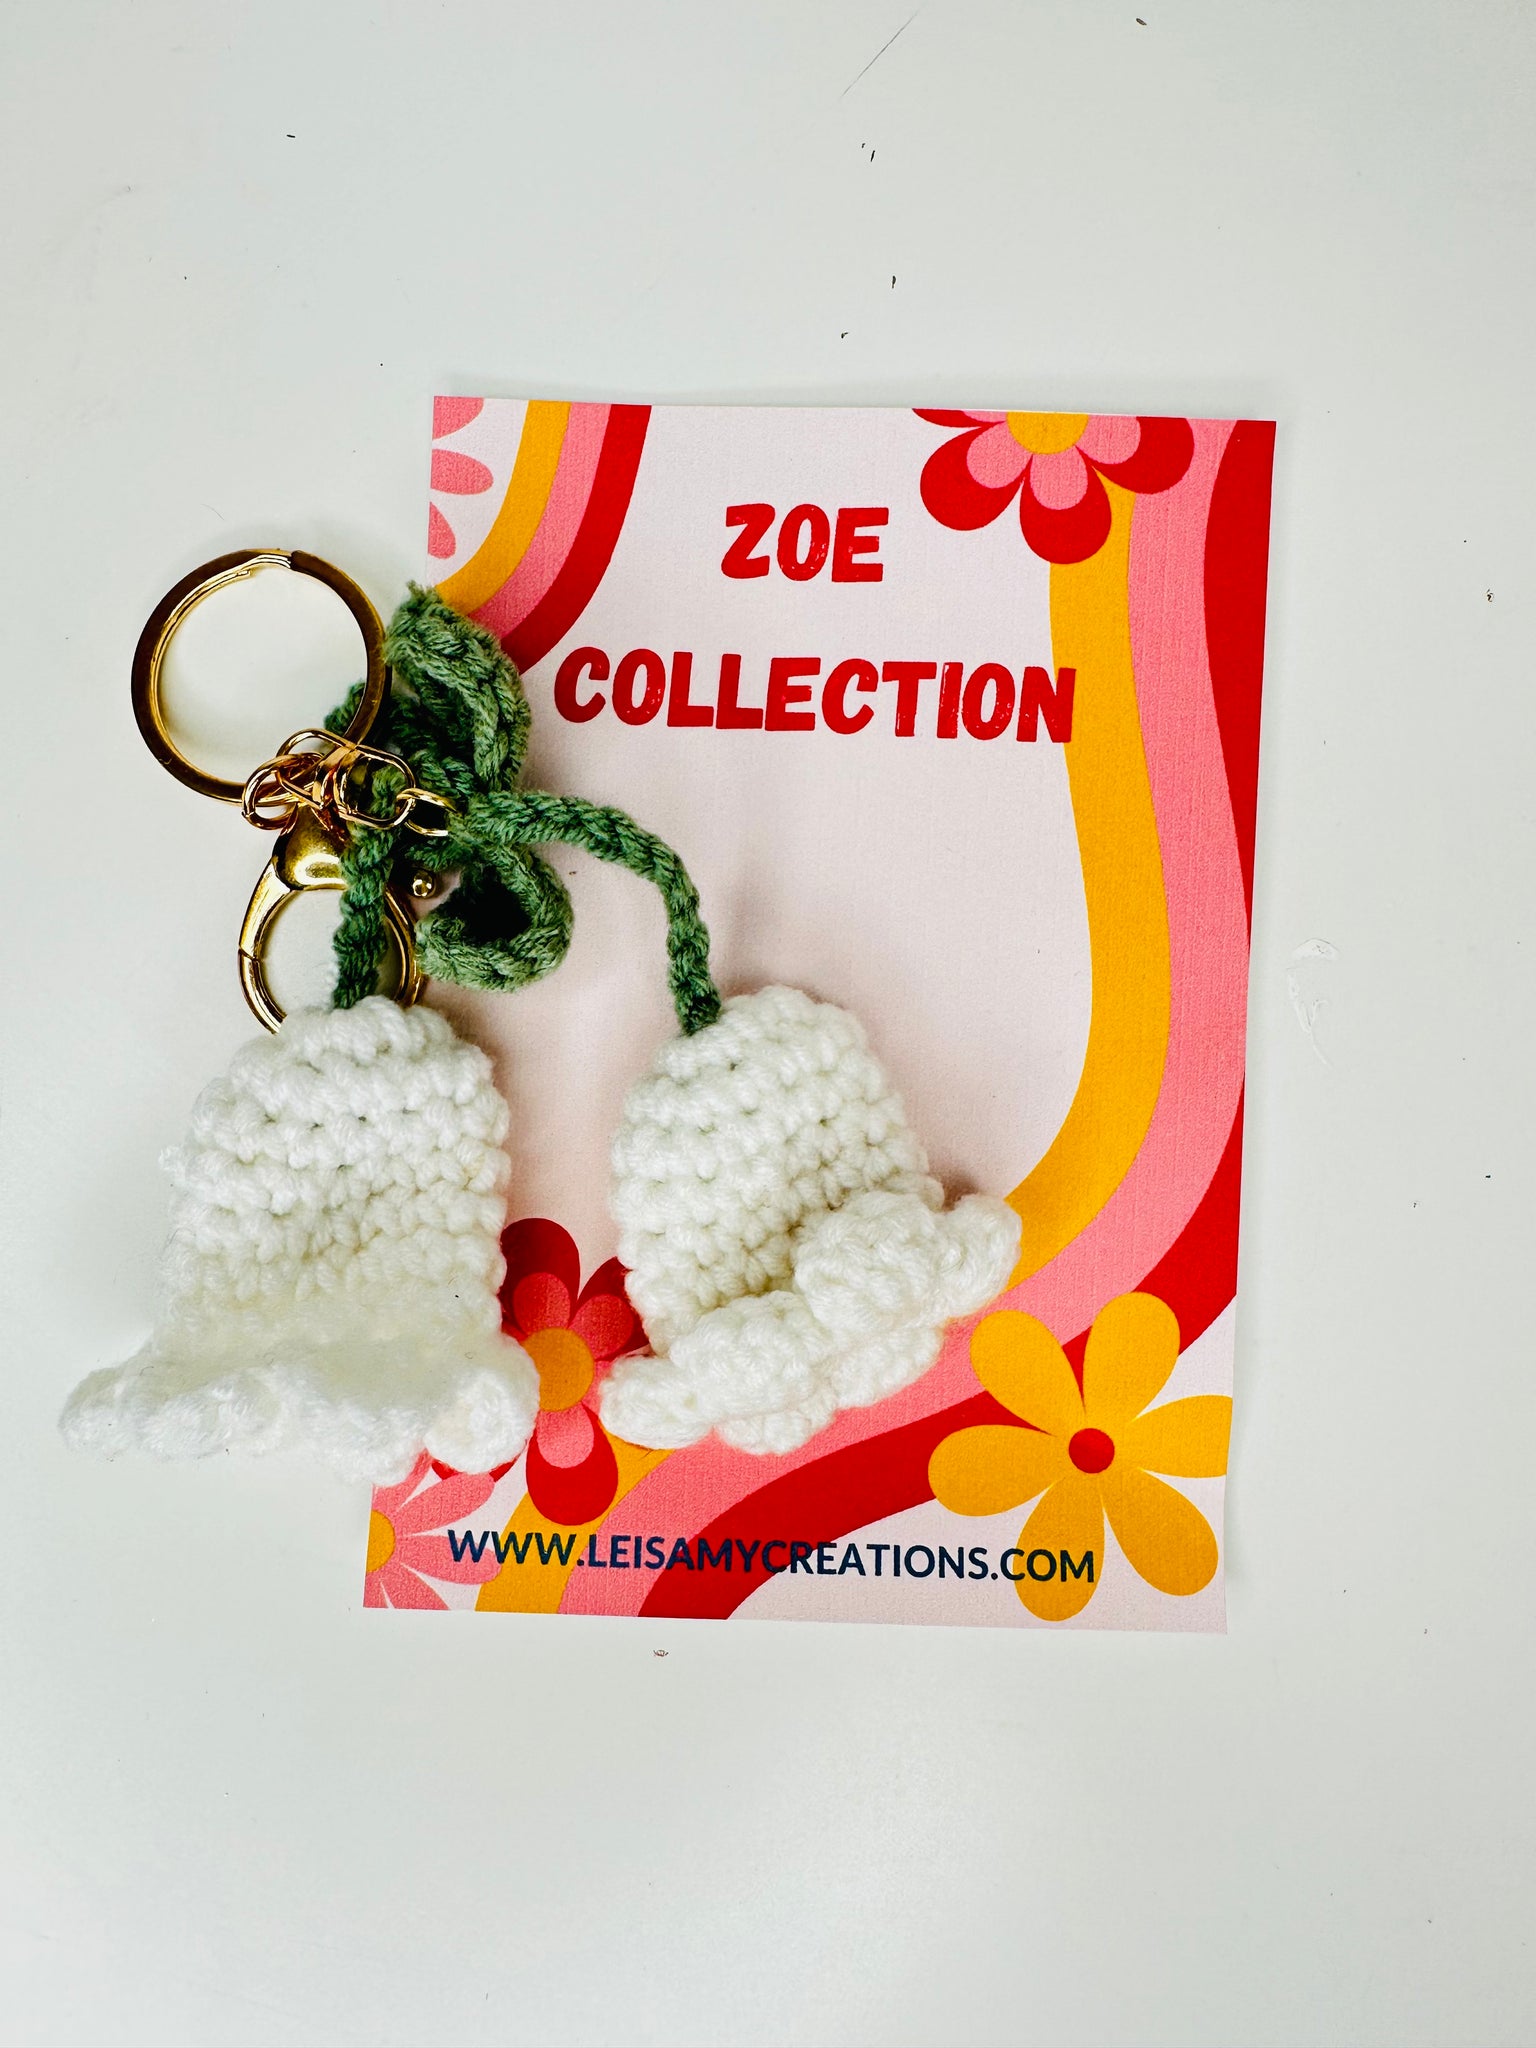 Zoé Collection